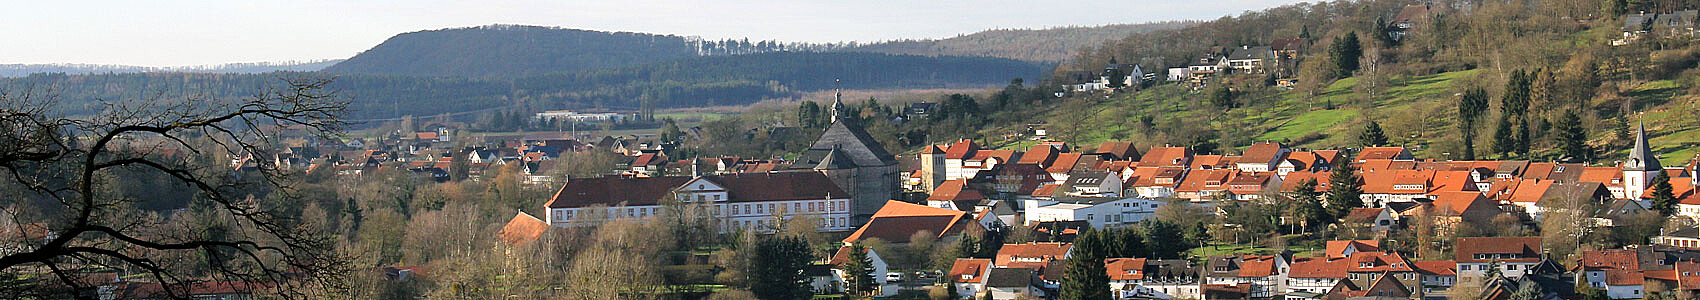 Das ehemalige Kloster Lamspringe und die Klosterkirche inmitten des Ortes gelegen. Foto: Klosterkammer/Lina Hatscher